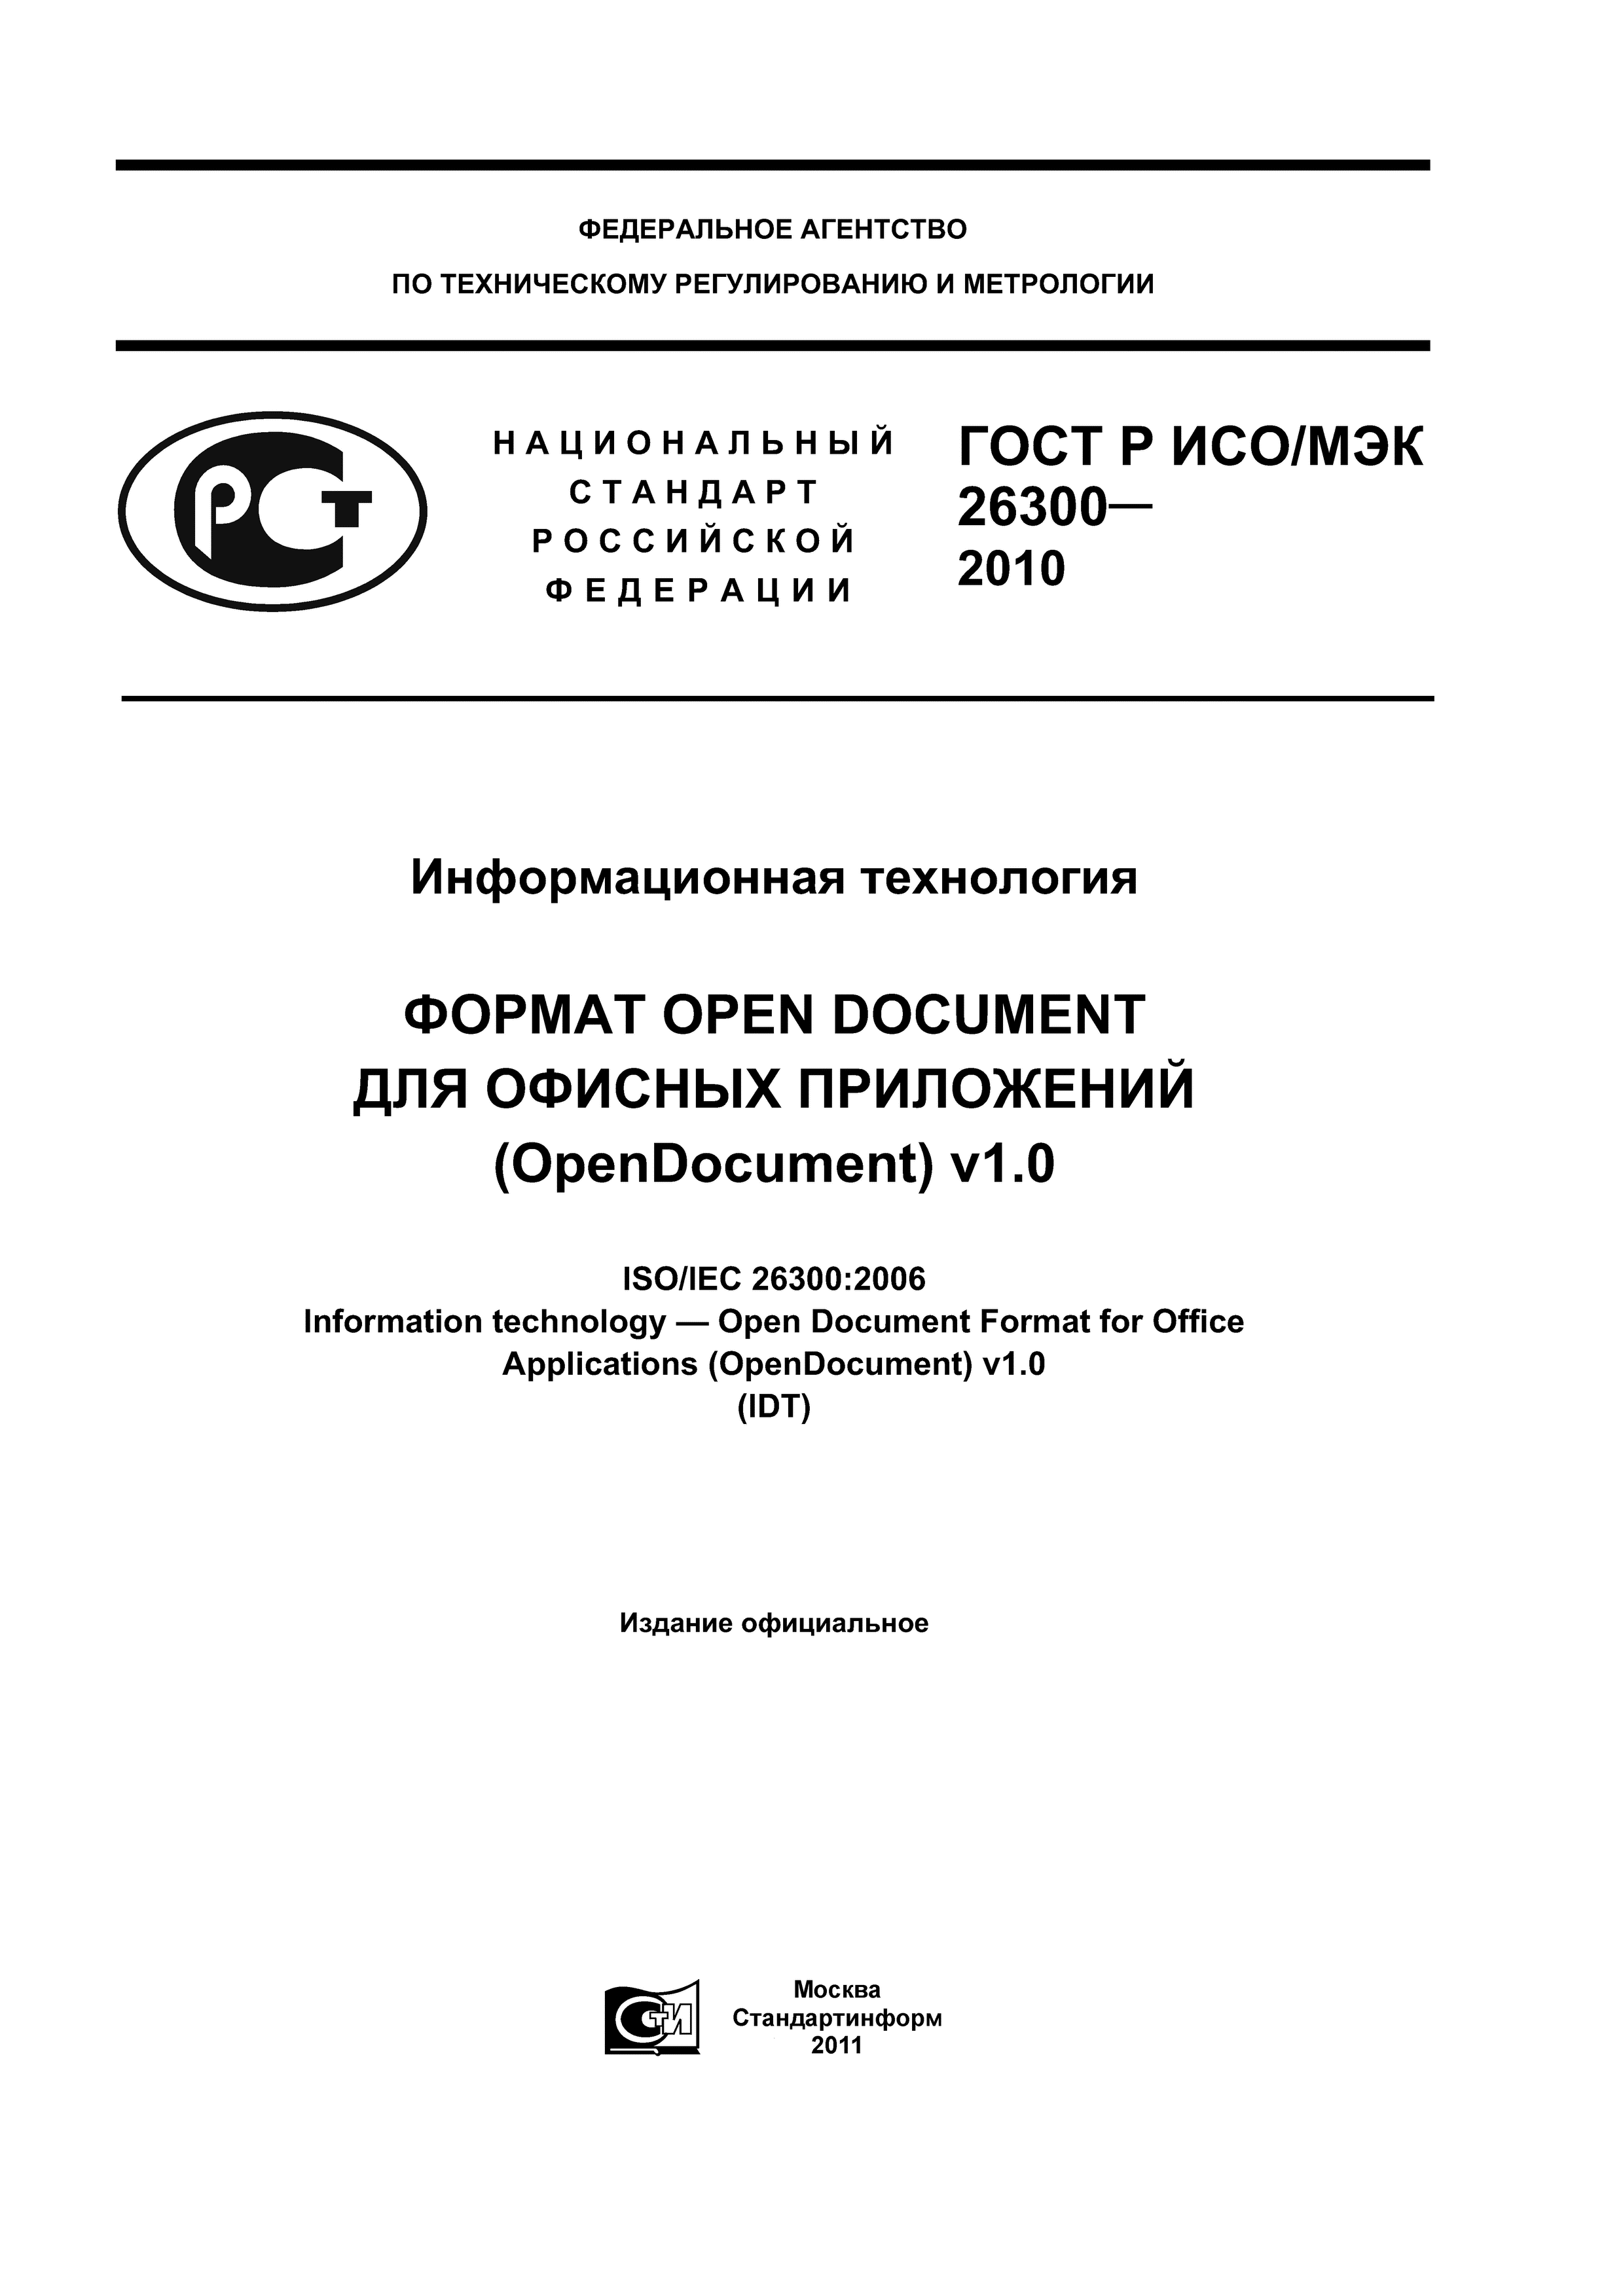 ГОСТ Р ИСО/МЭК 26300-2010